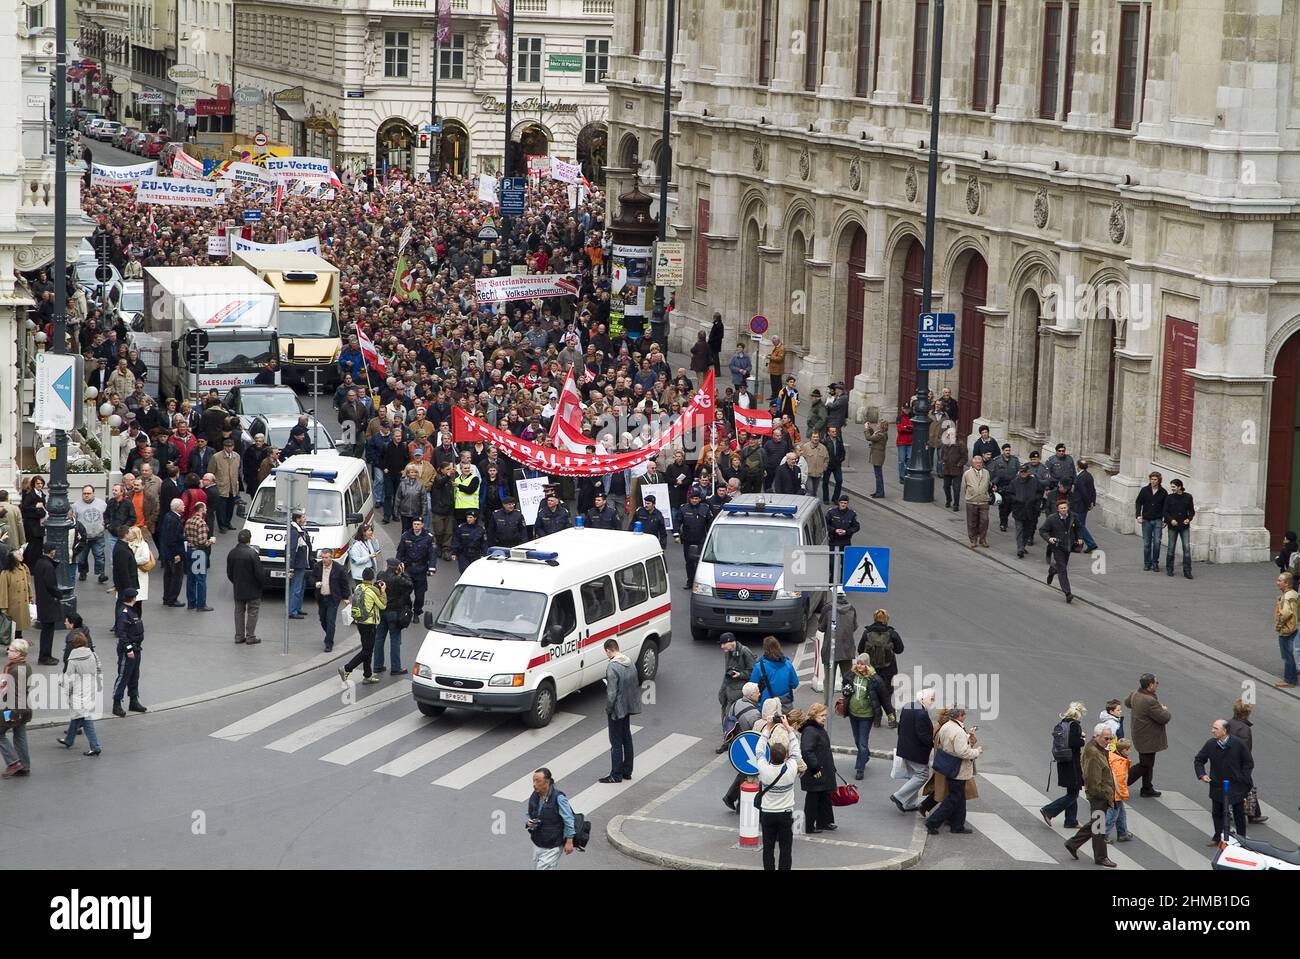 Vienna, Austria. March 23, 2008. Demonstration for referendum against Lisbon Treaty in Vienna Stock Photo